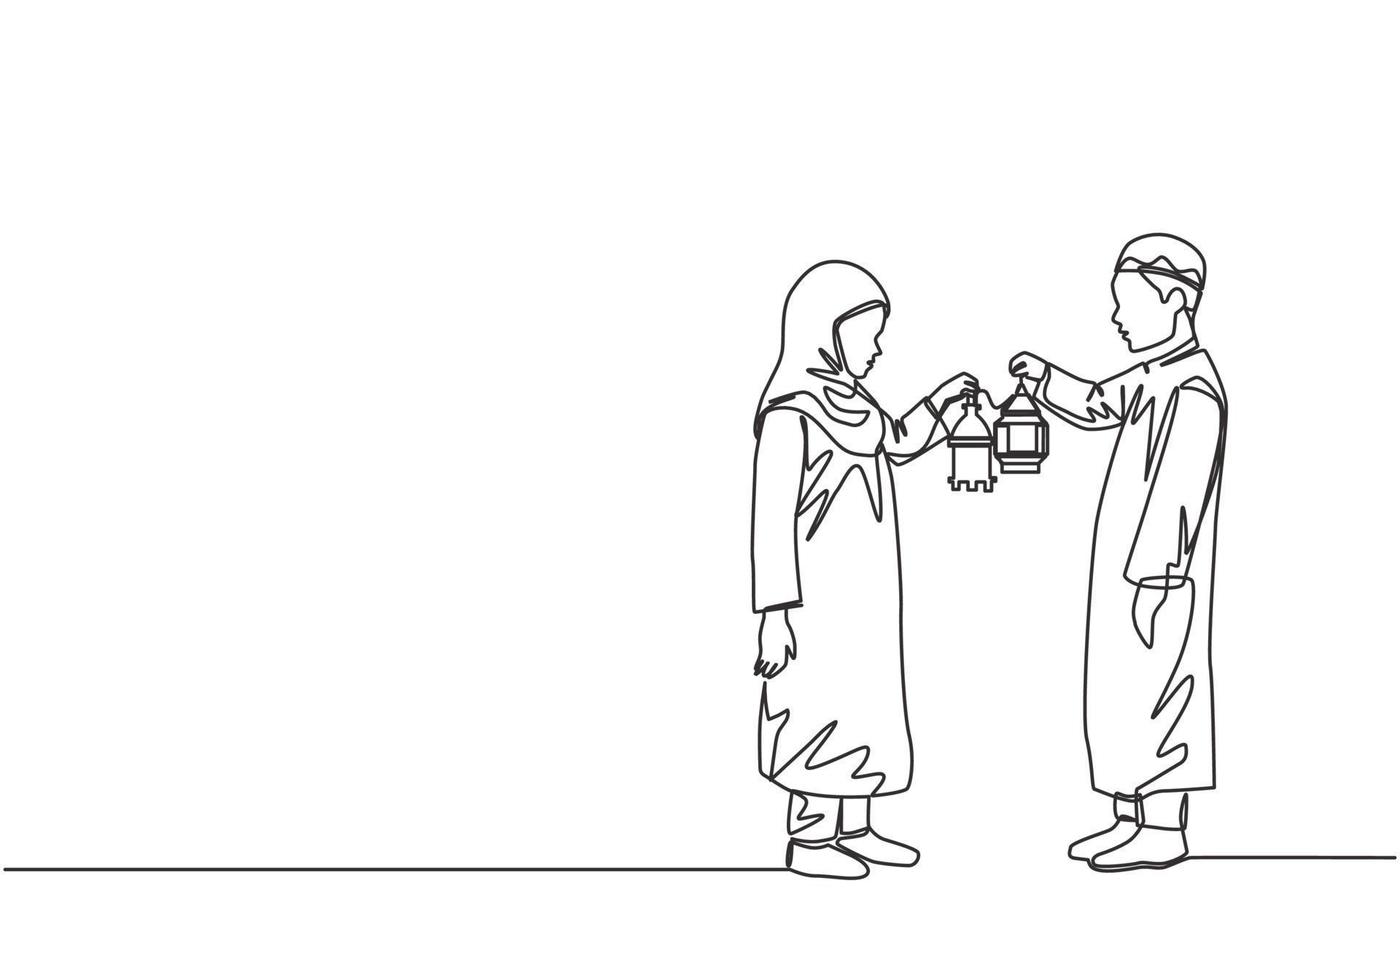 Ramadán kareem saludo tarjeta, póster y bandera diseño antecedentes. soltero continuo línea dibujo de dos joven musulmán islámico chico y niña participación linterna lámpara. uno línea dibujar vector ilustración